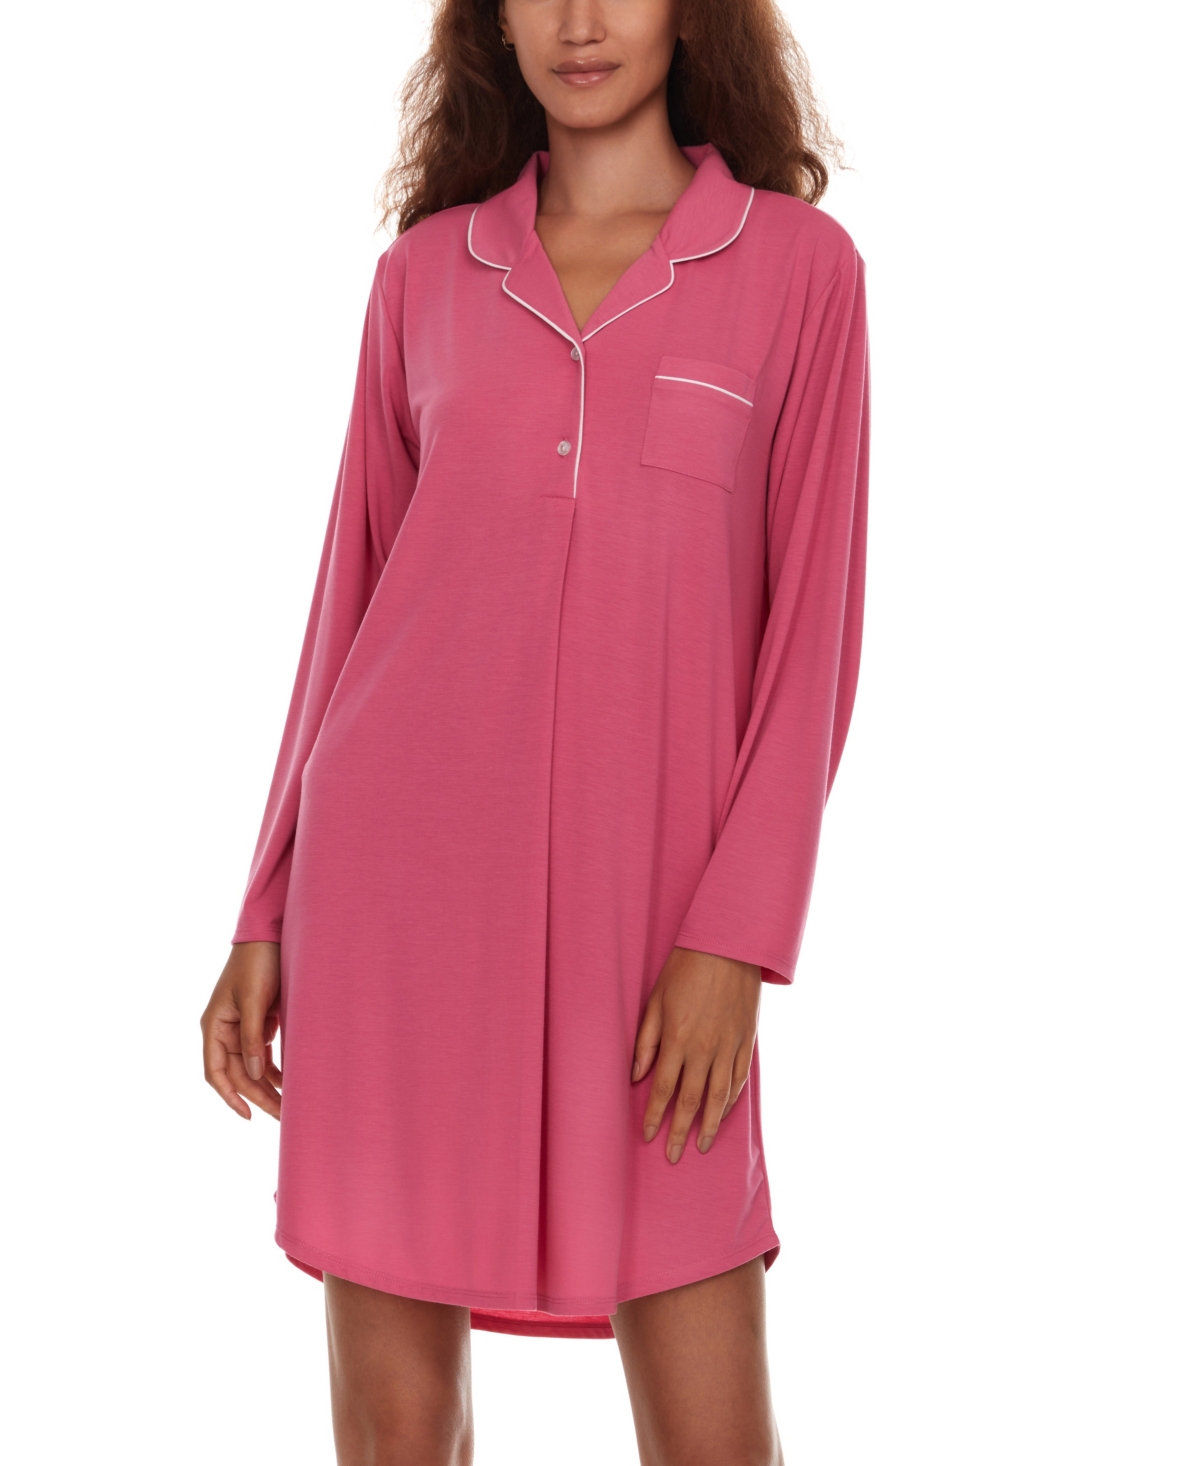 Women's Deborah Long Sleeve Notch Knit Sleepshirt Nightgown - Hot Pink